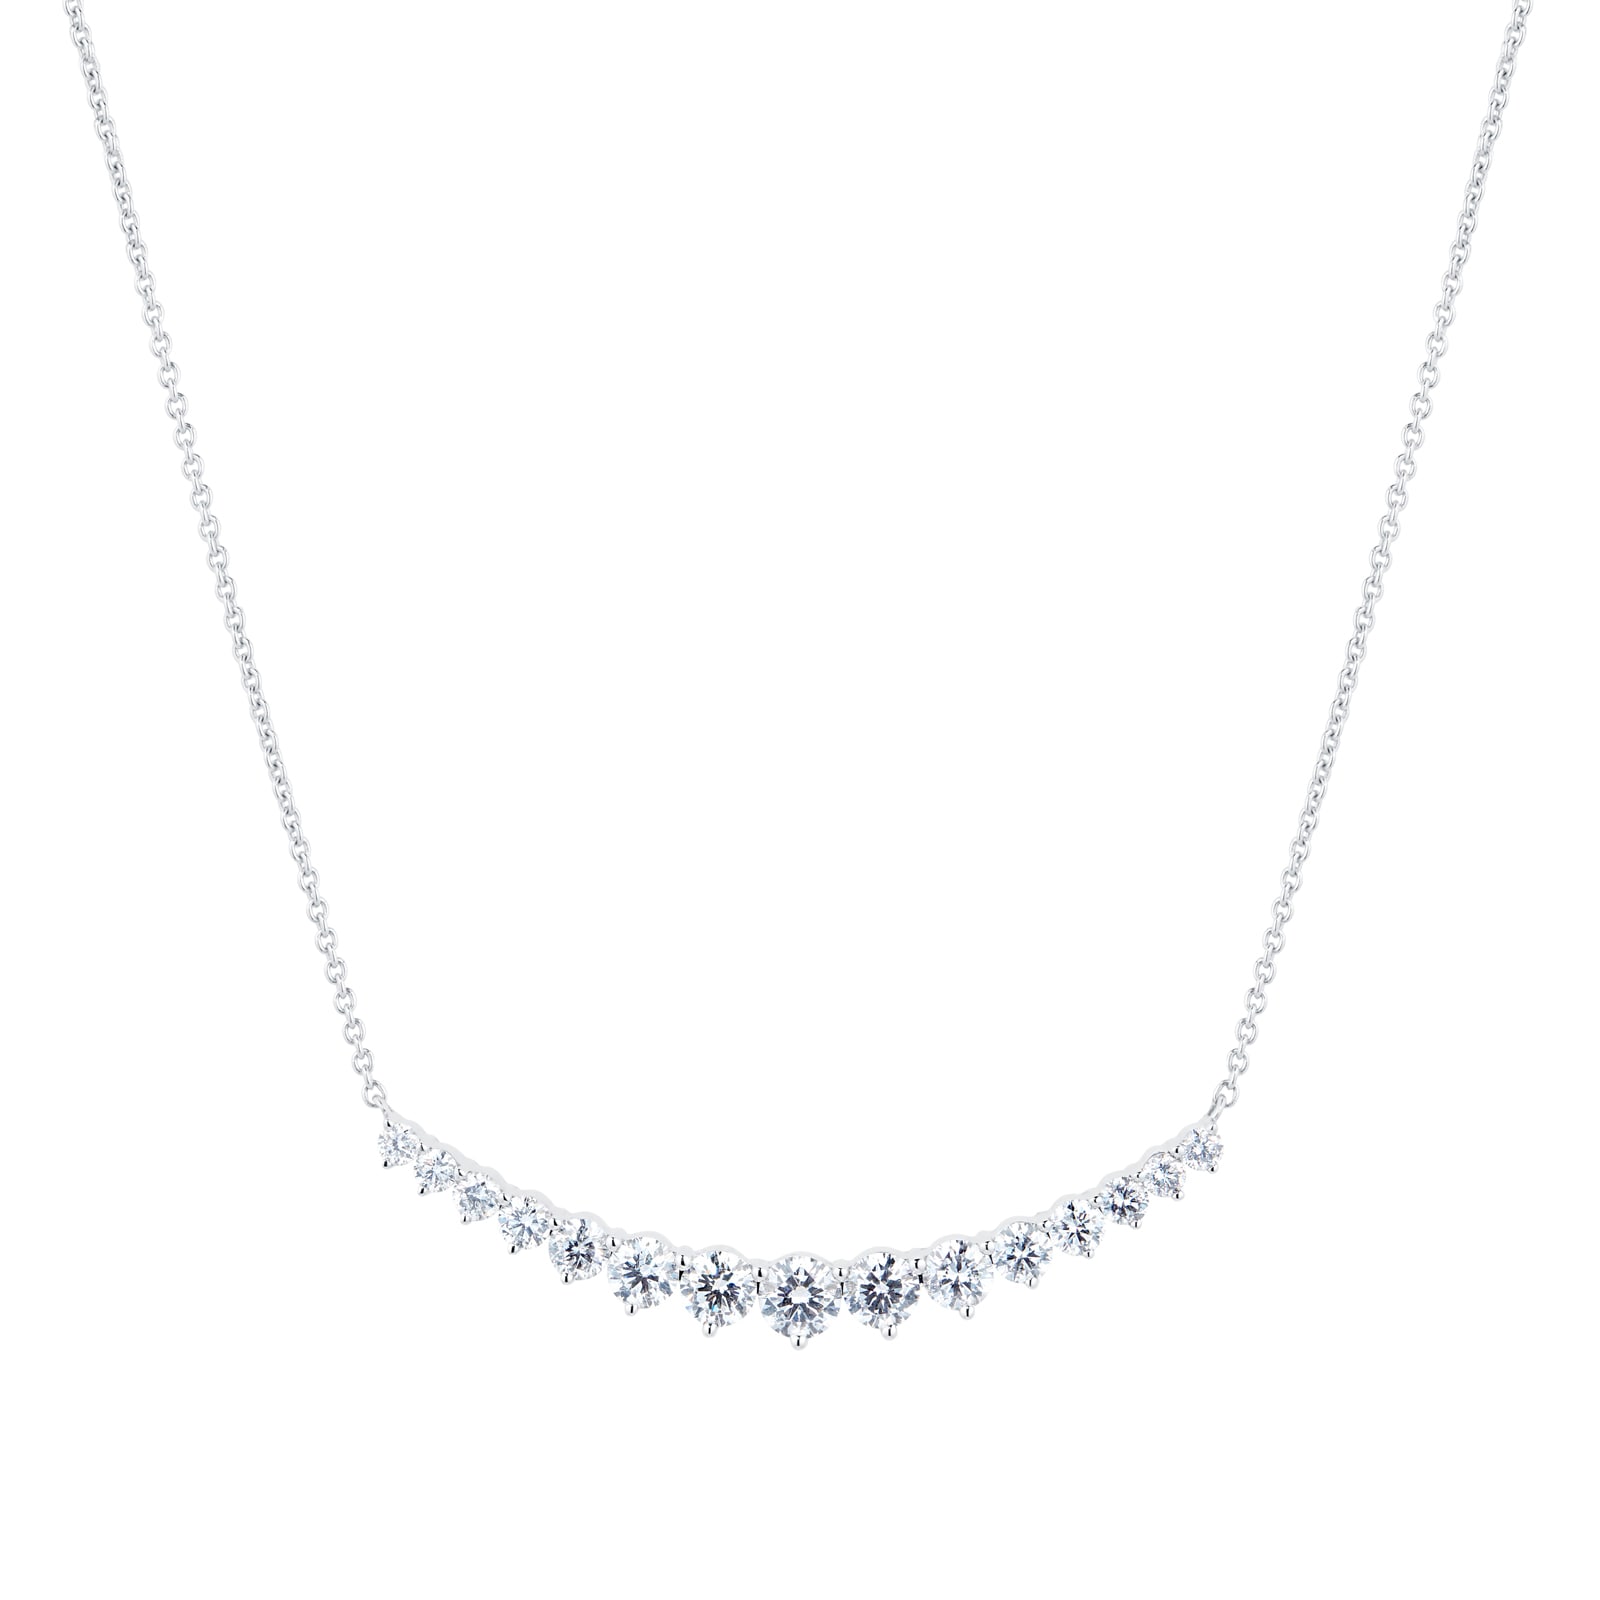 18ct white gold diamond line necklace | Jamieson & Carry - Jamieson & Carry